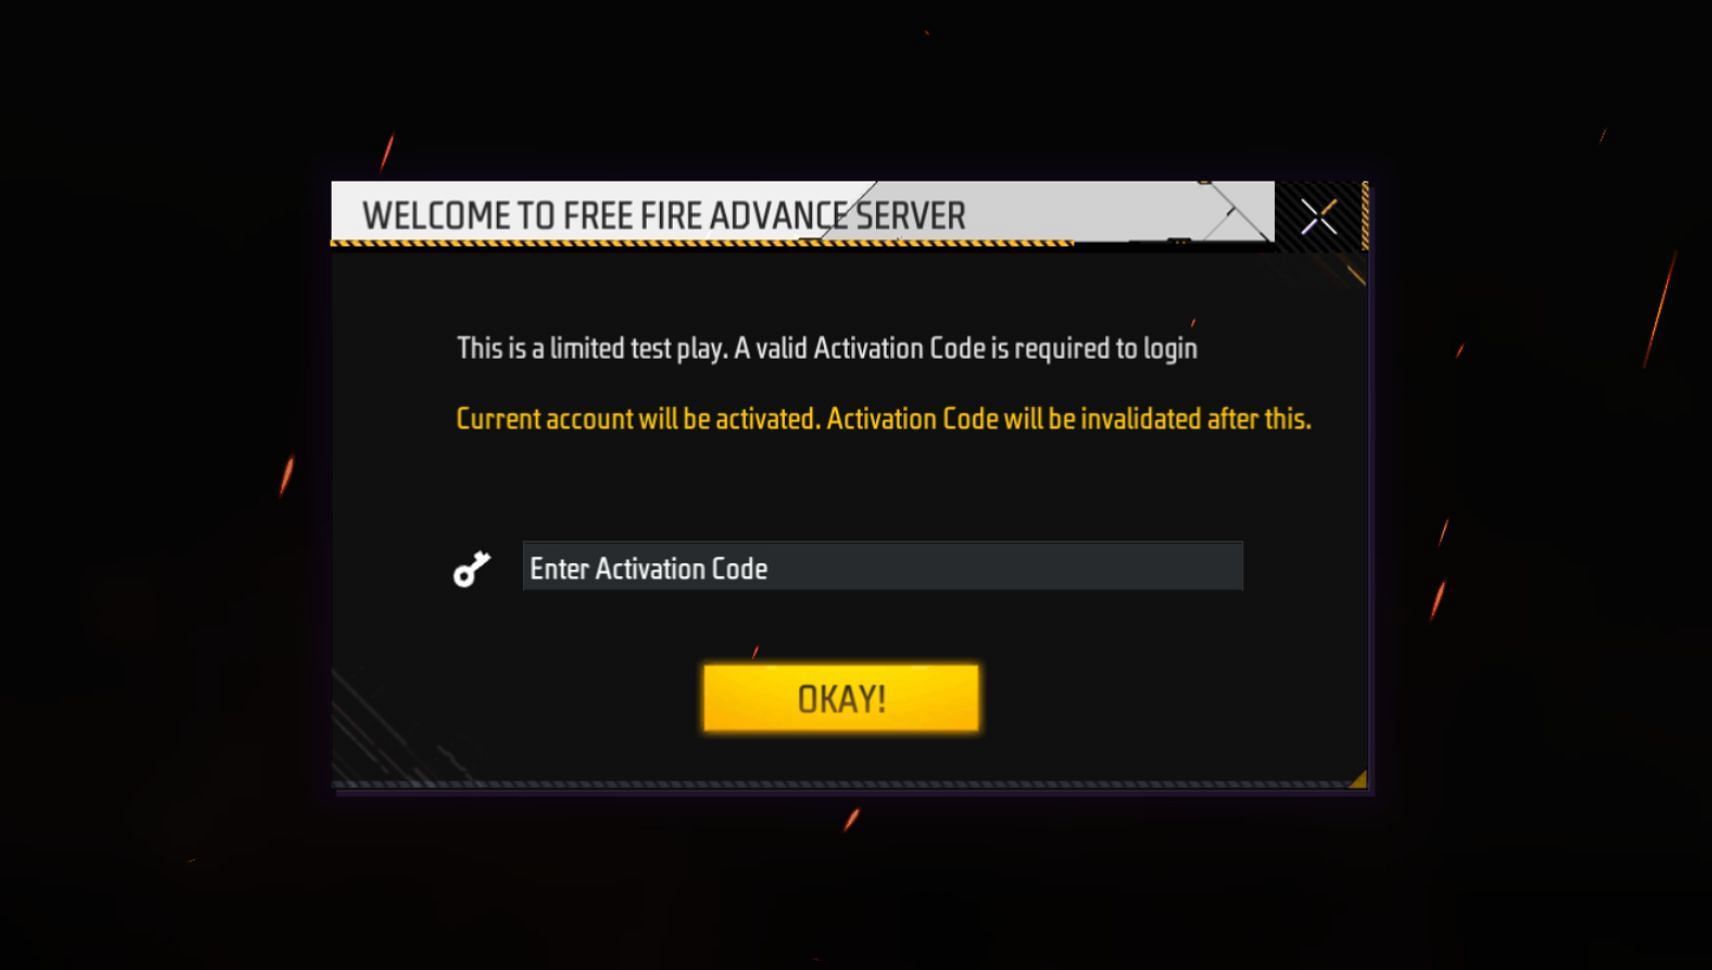 Enter the Activation Code to receive access (Image via Garena)